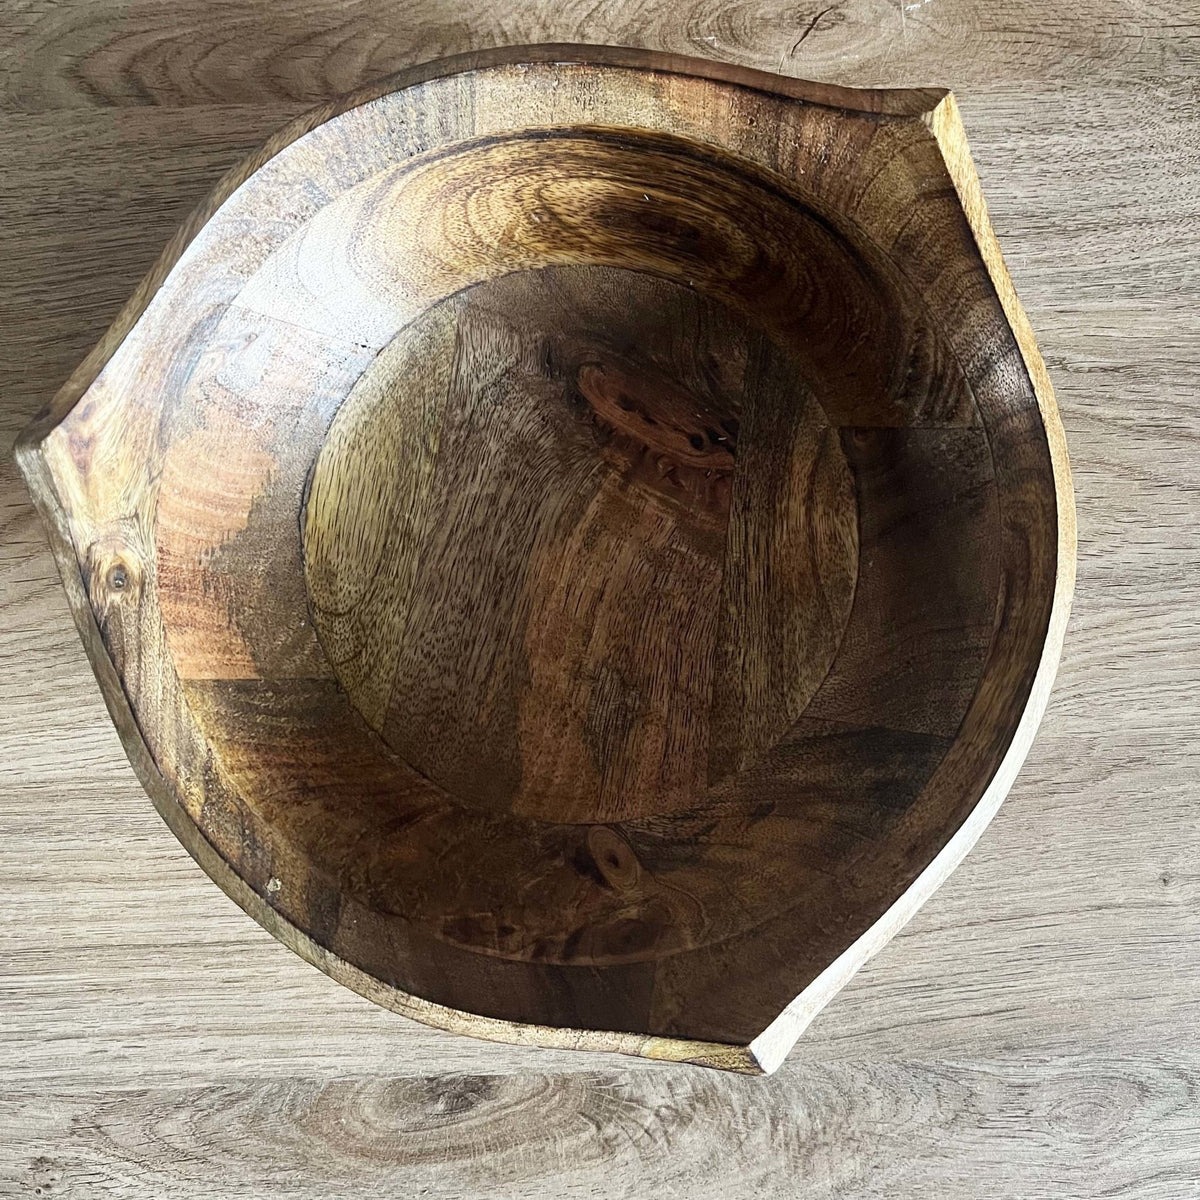 Large Puncta Mango Wood Bowl on wooden table